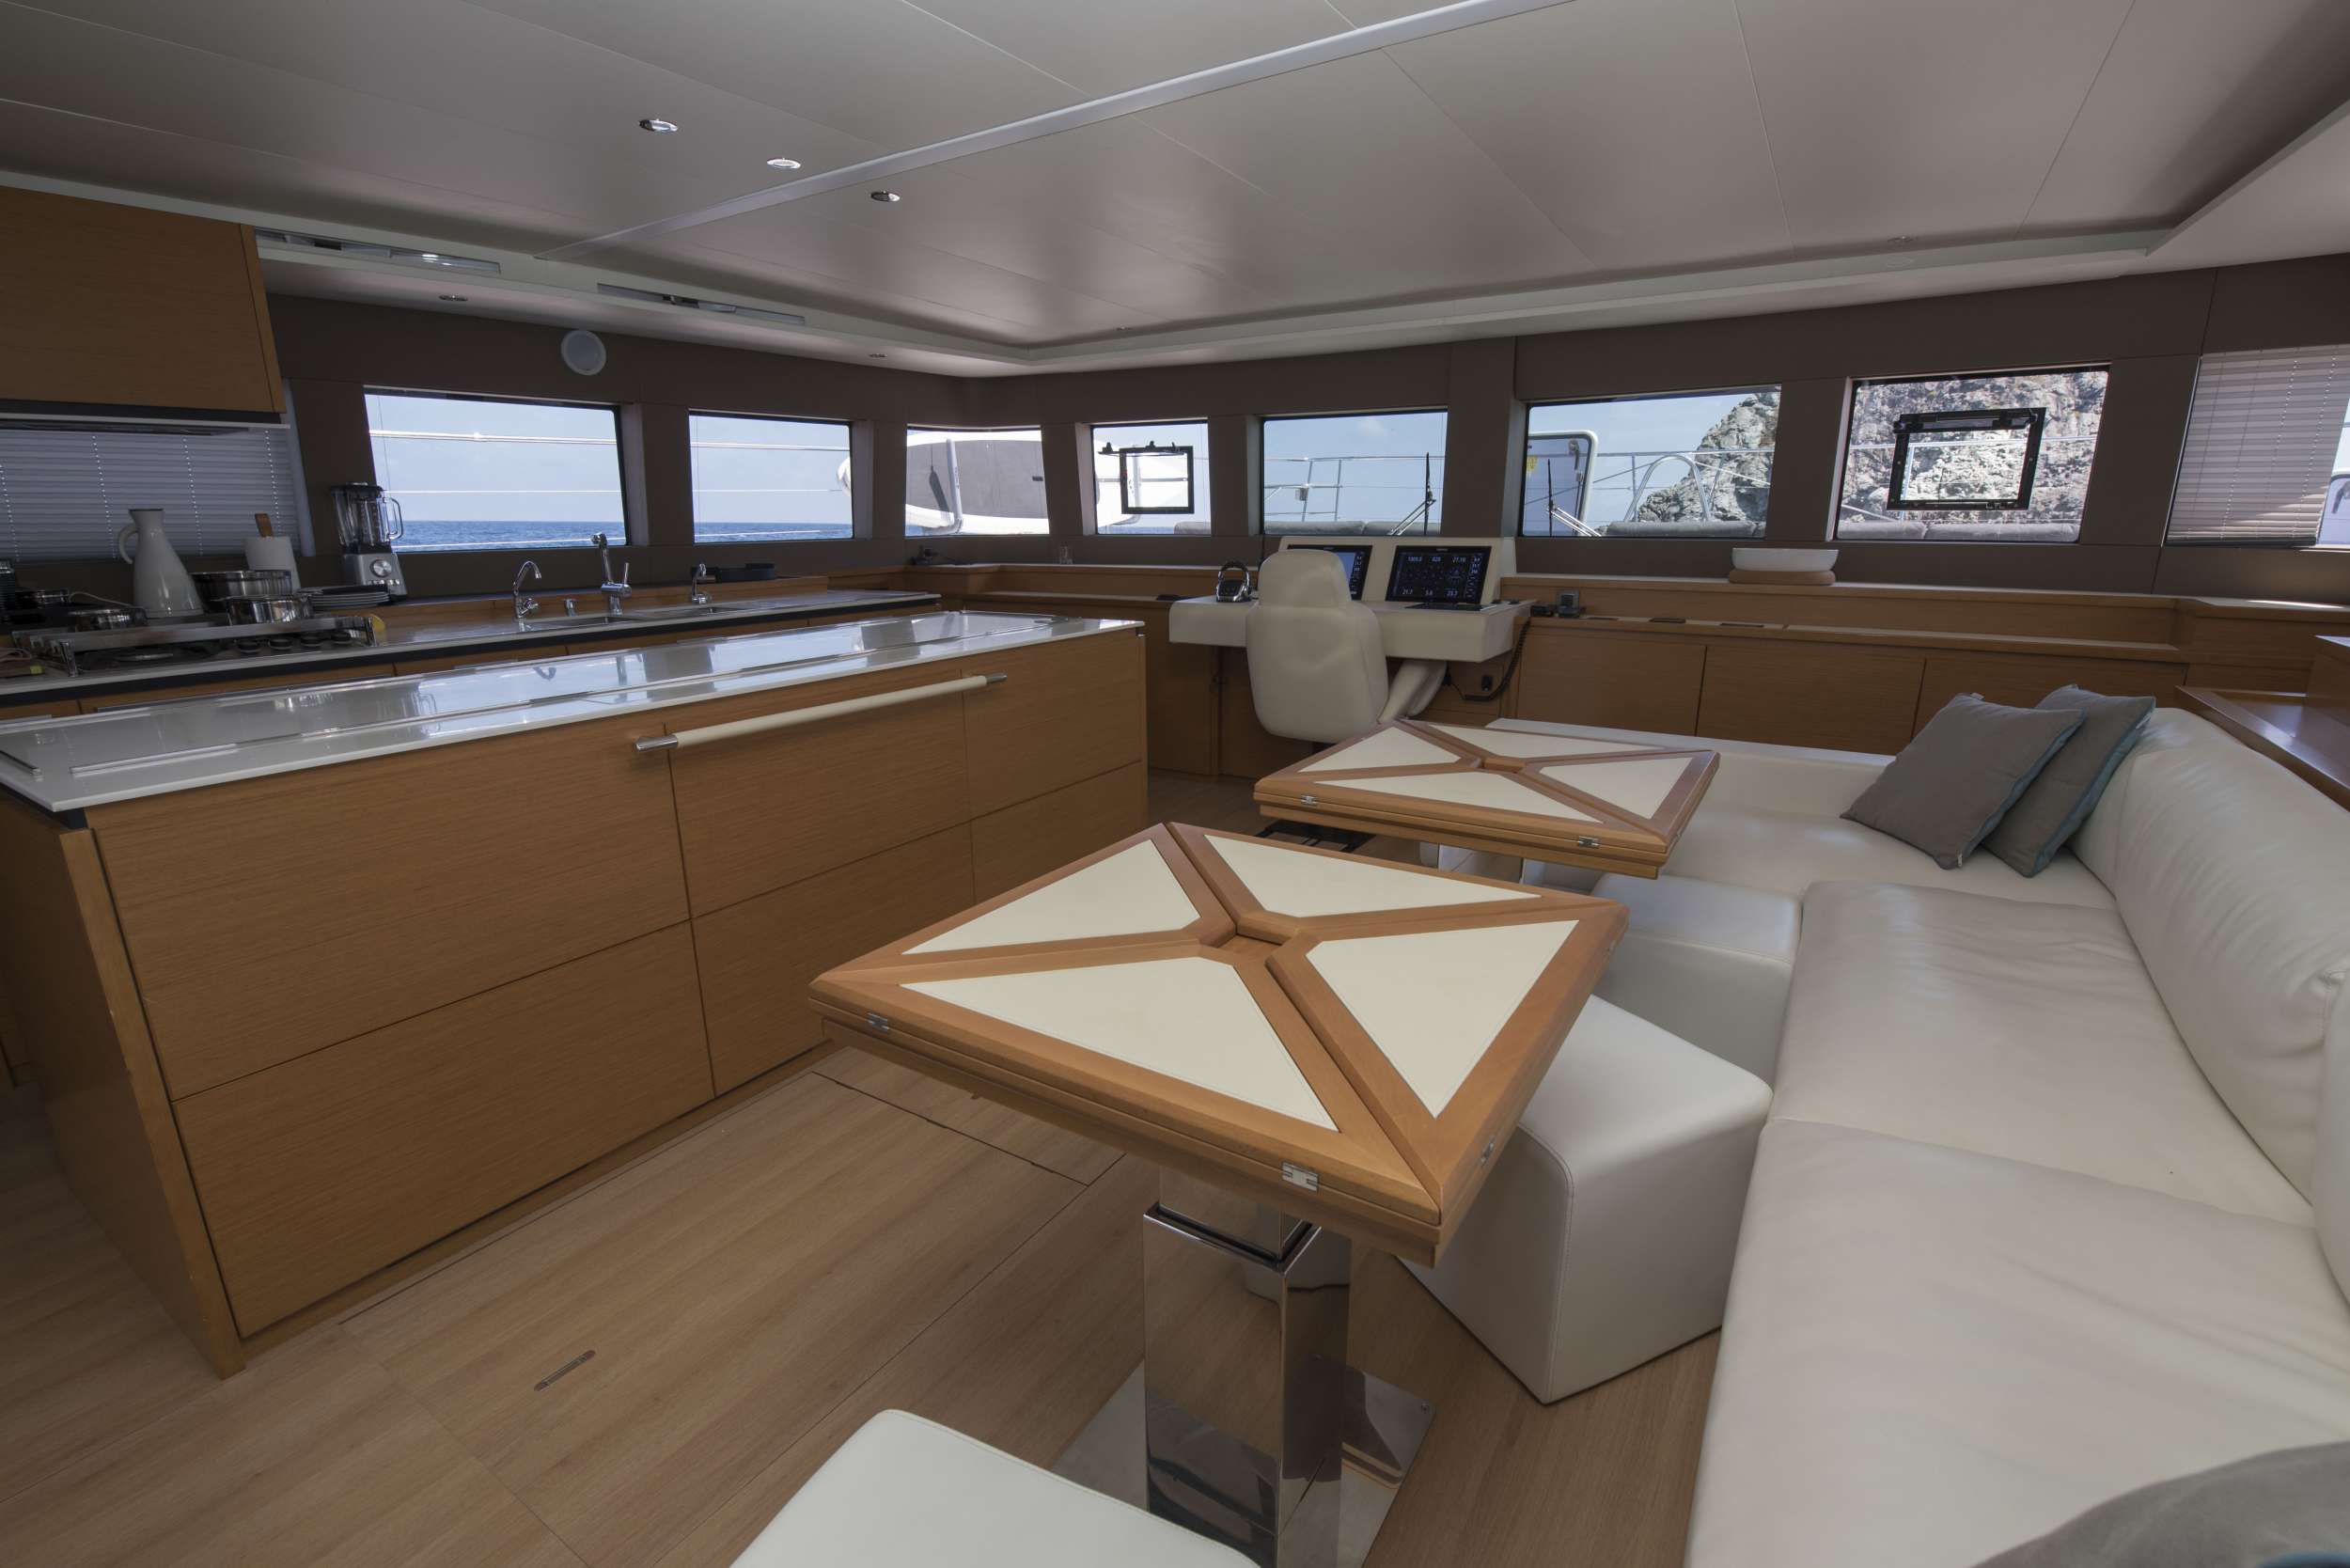 LA FREGATE - Yacht Charter Monaco & Boat hire in Fr. Riviera, Corsica & Sardinia 2